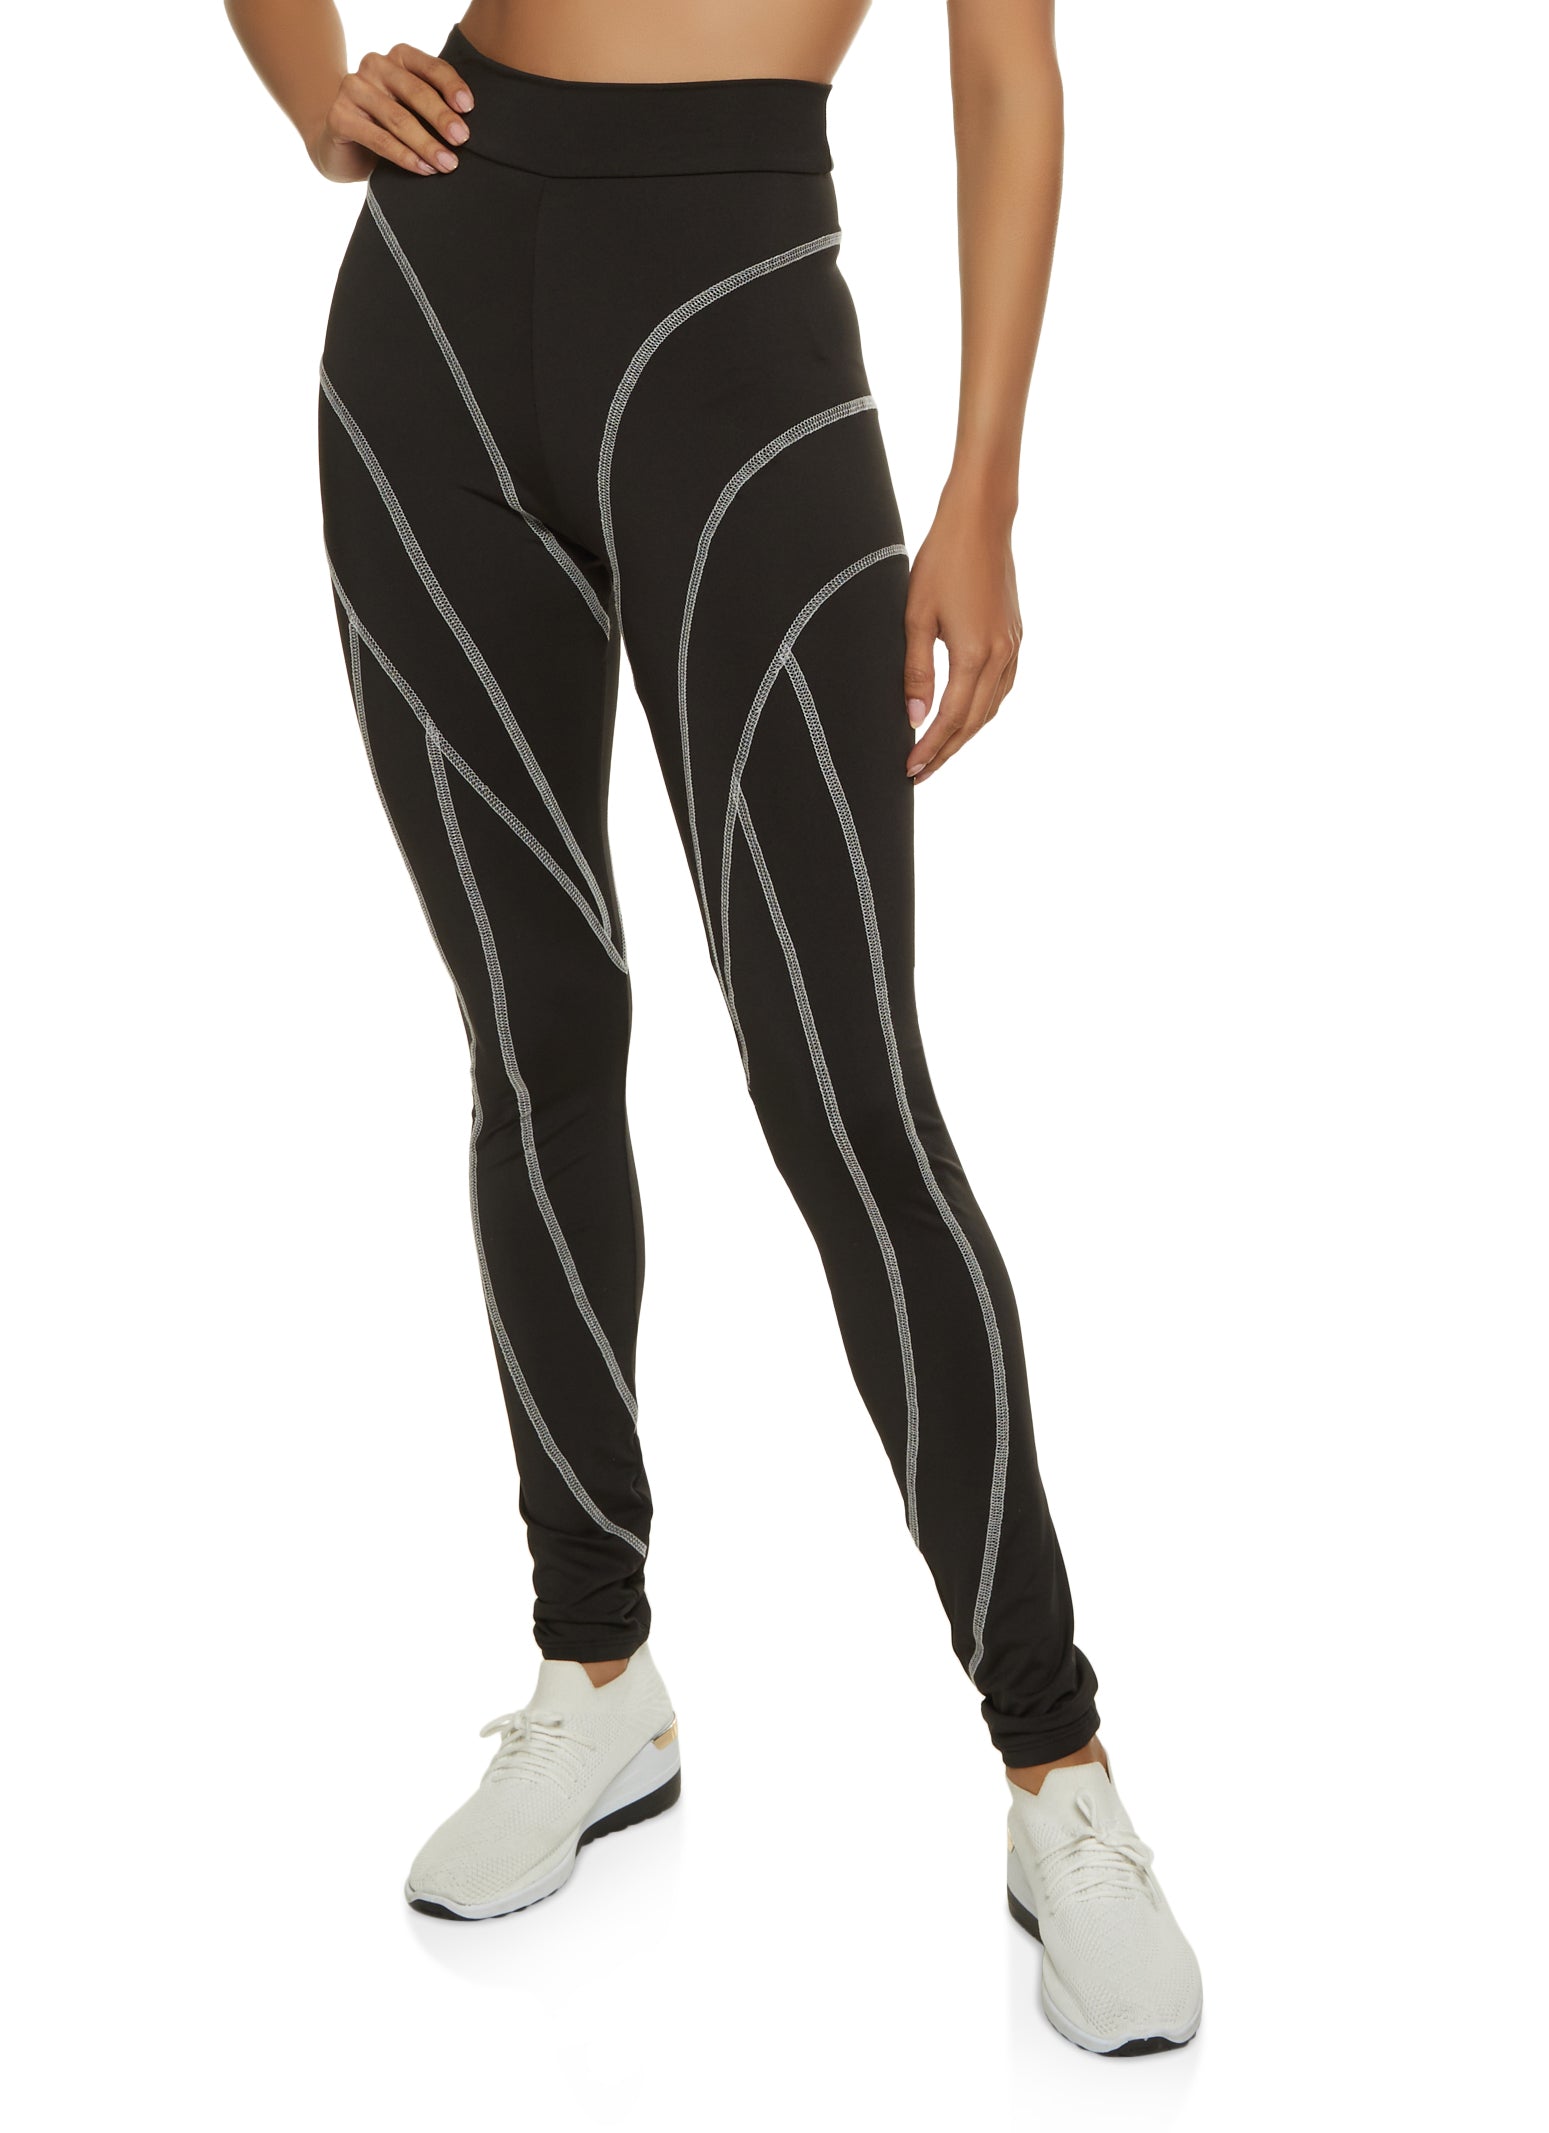 AE, Women's Fitness - Wrap Pants - Black, Workout Pants Women